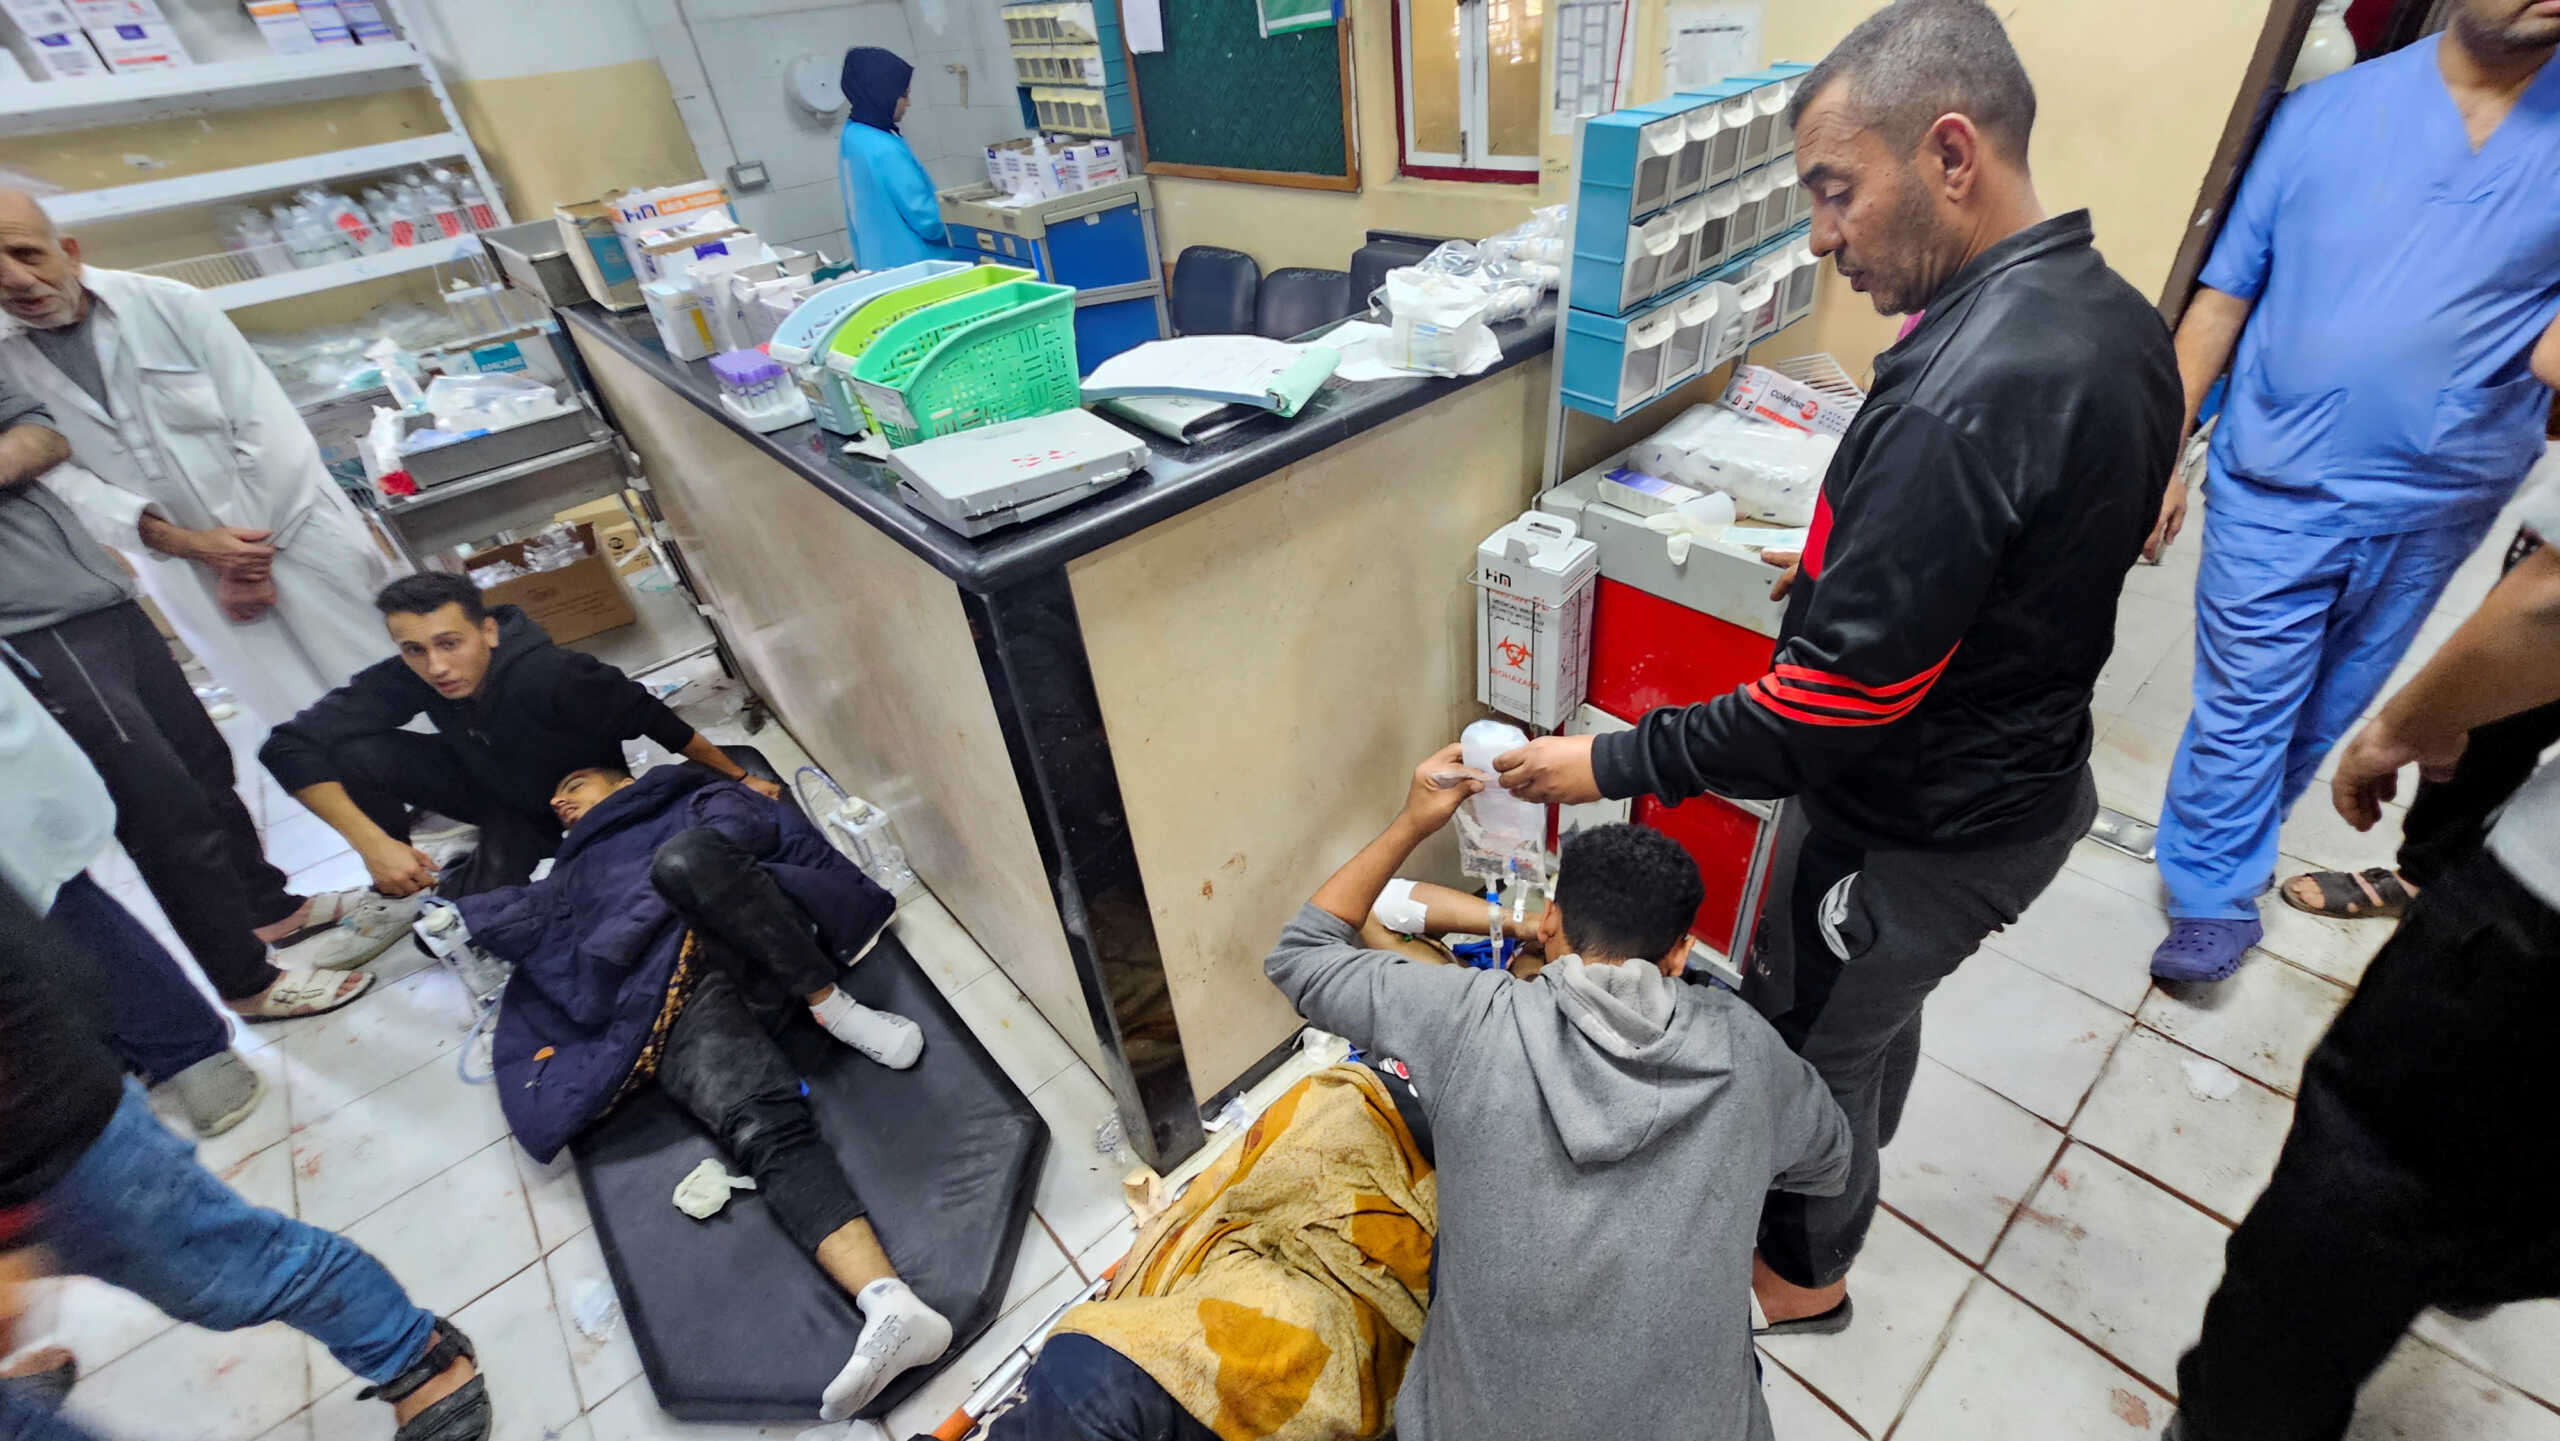 Μέση Ανατολή: Οι Γιατροί Χωρίς Σύνορα καταγγέλλουν βομβαρδισμό σε νοσοκομείο και τον θάνατο 3 μελών τους